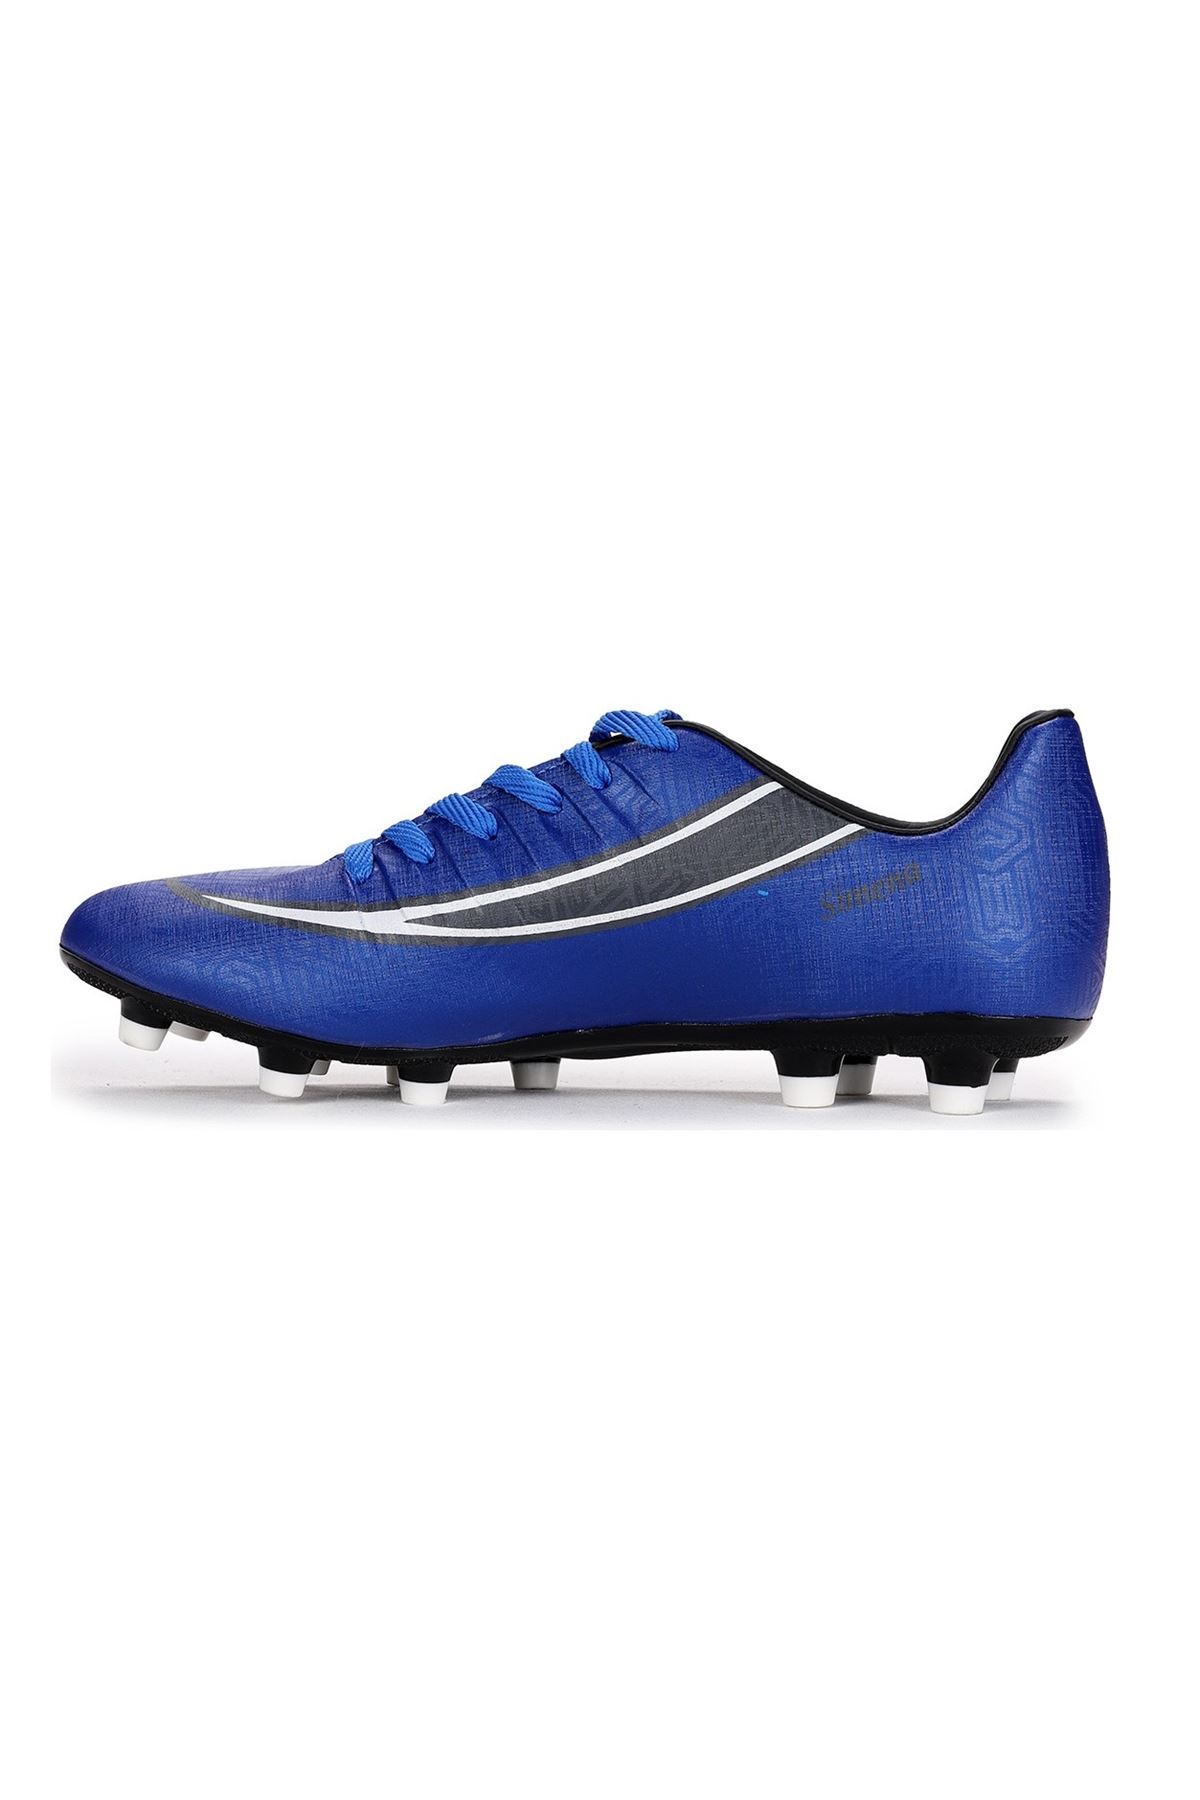 Lig Simena (39-45) Futbol Ayakkabısı Krampon - Mavi